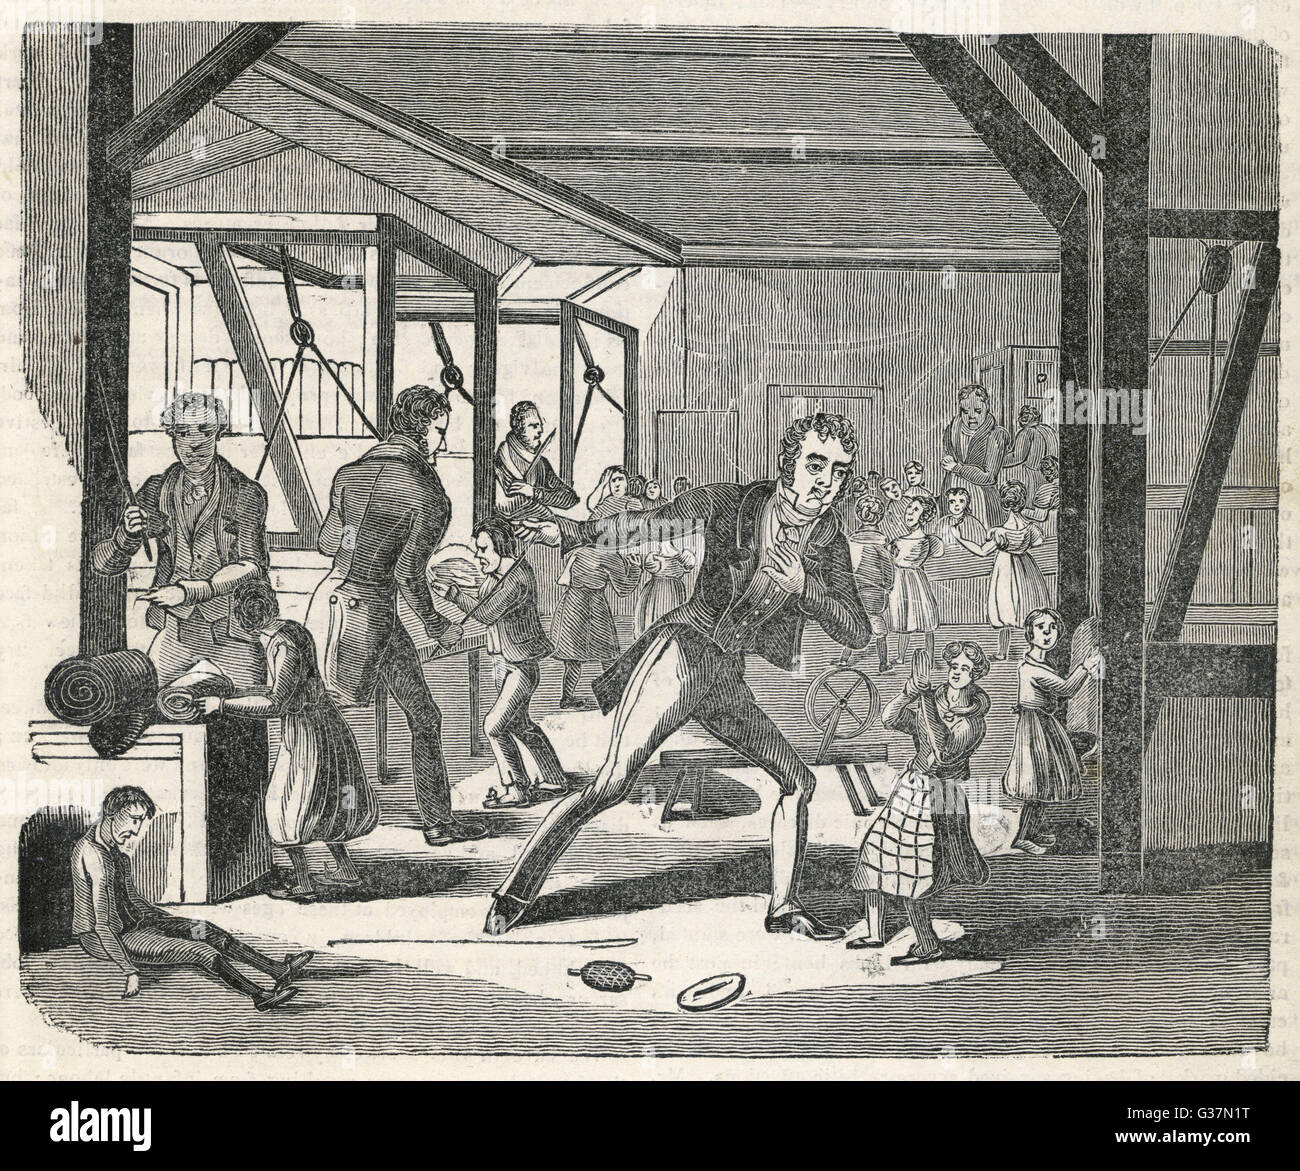 Il trattamento brutale dei bambini nelle fabbriche di inglese data: 1834 Foto Stock